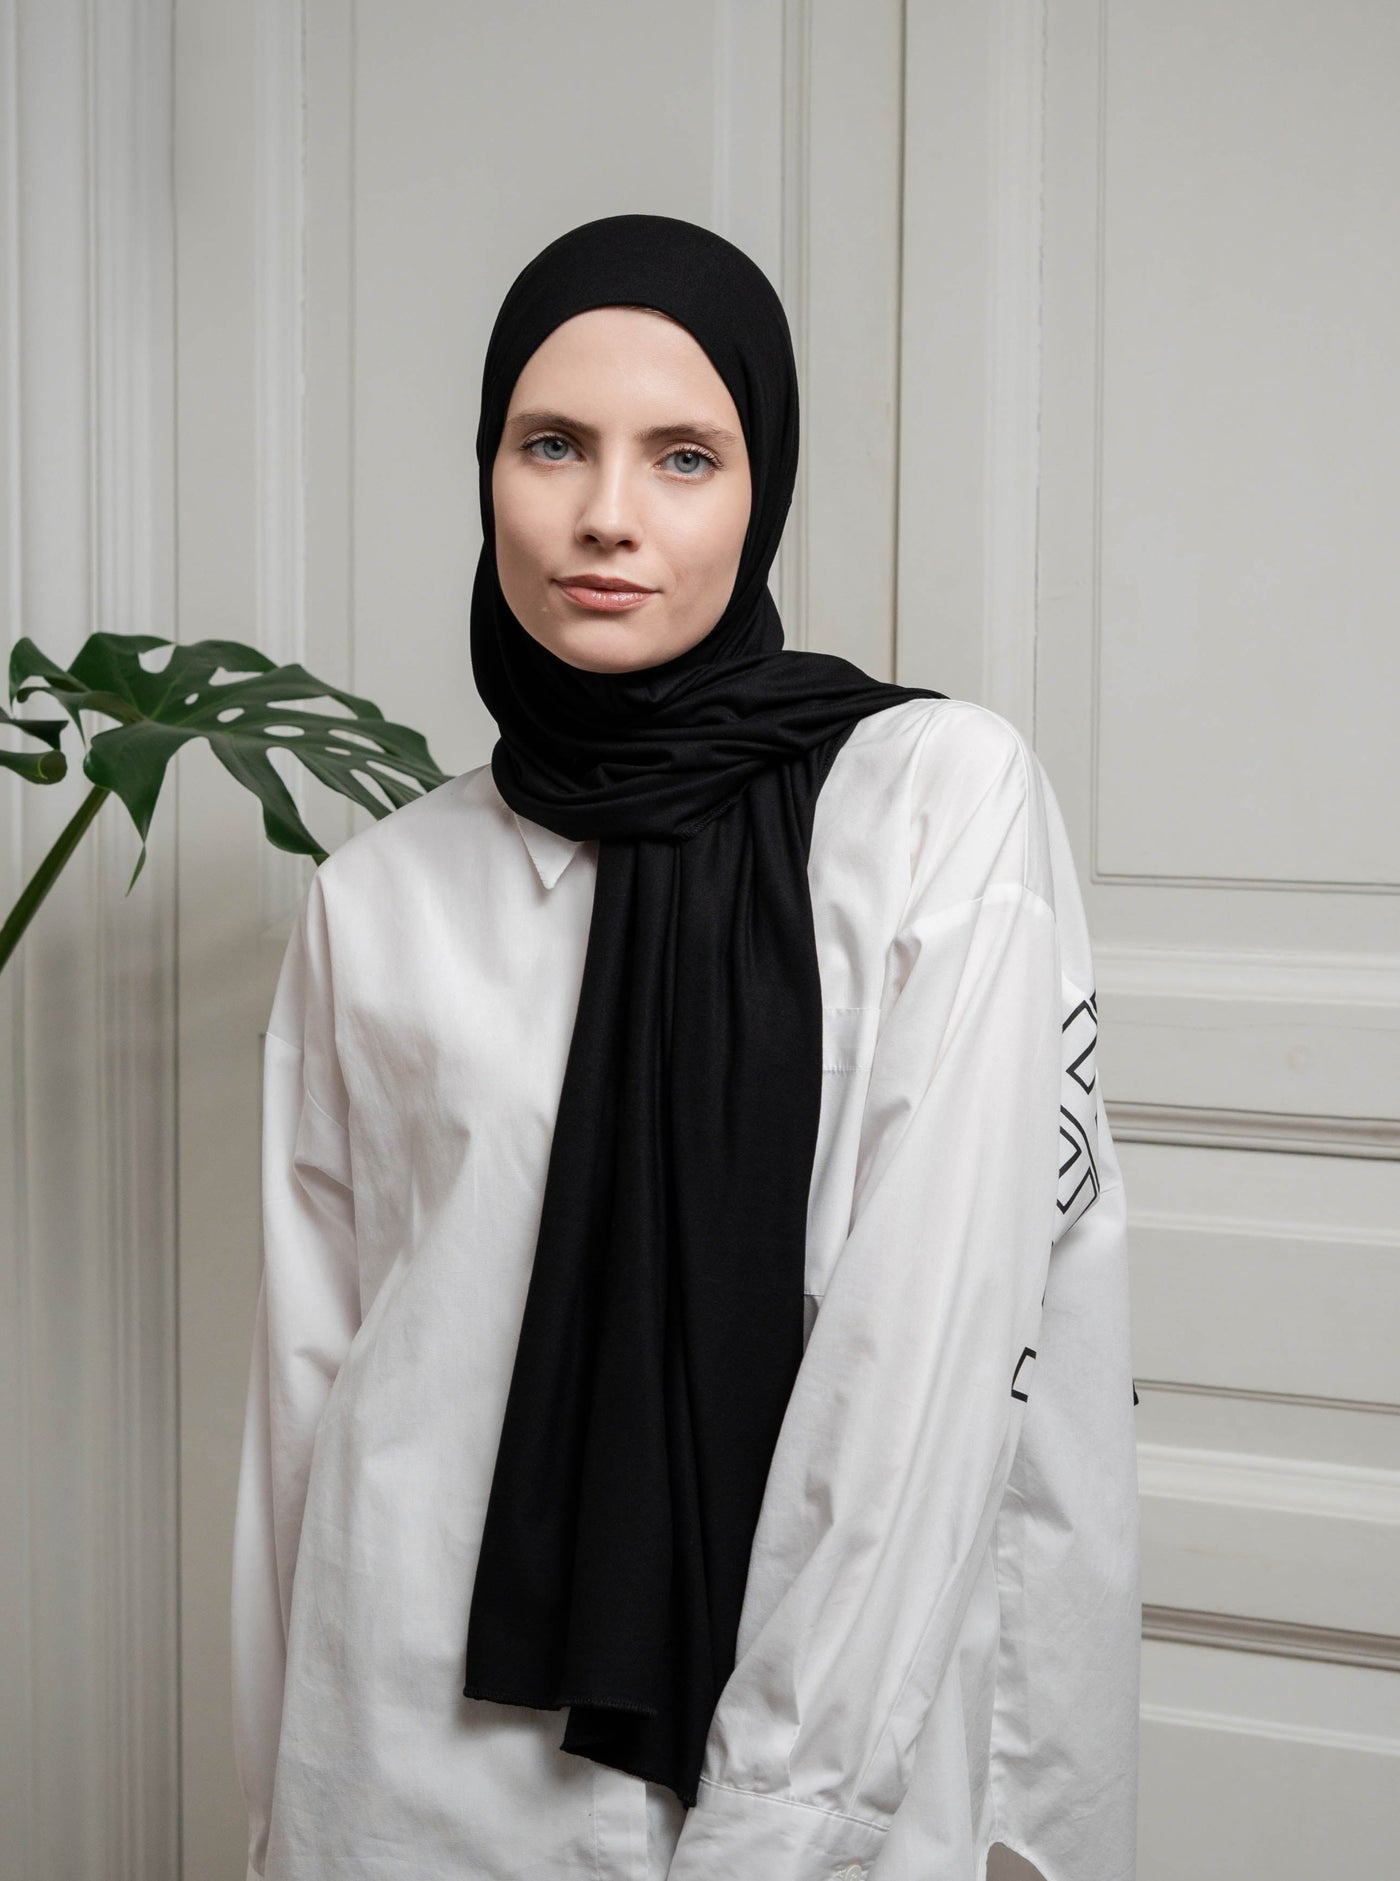 Ultra-soft Jersey Hijab - black